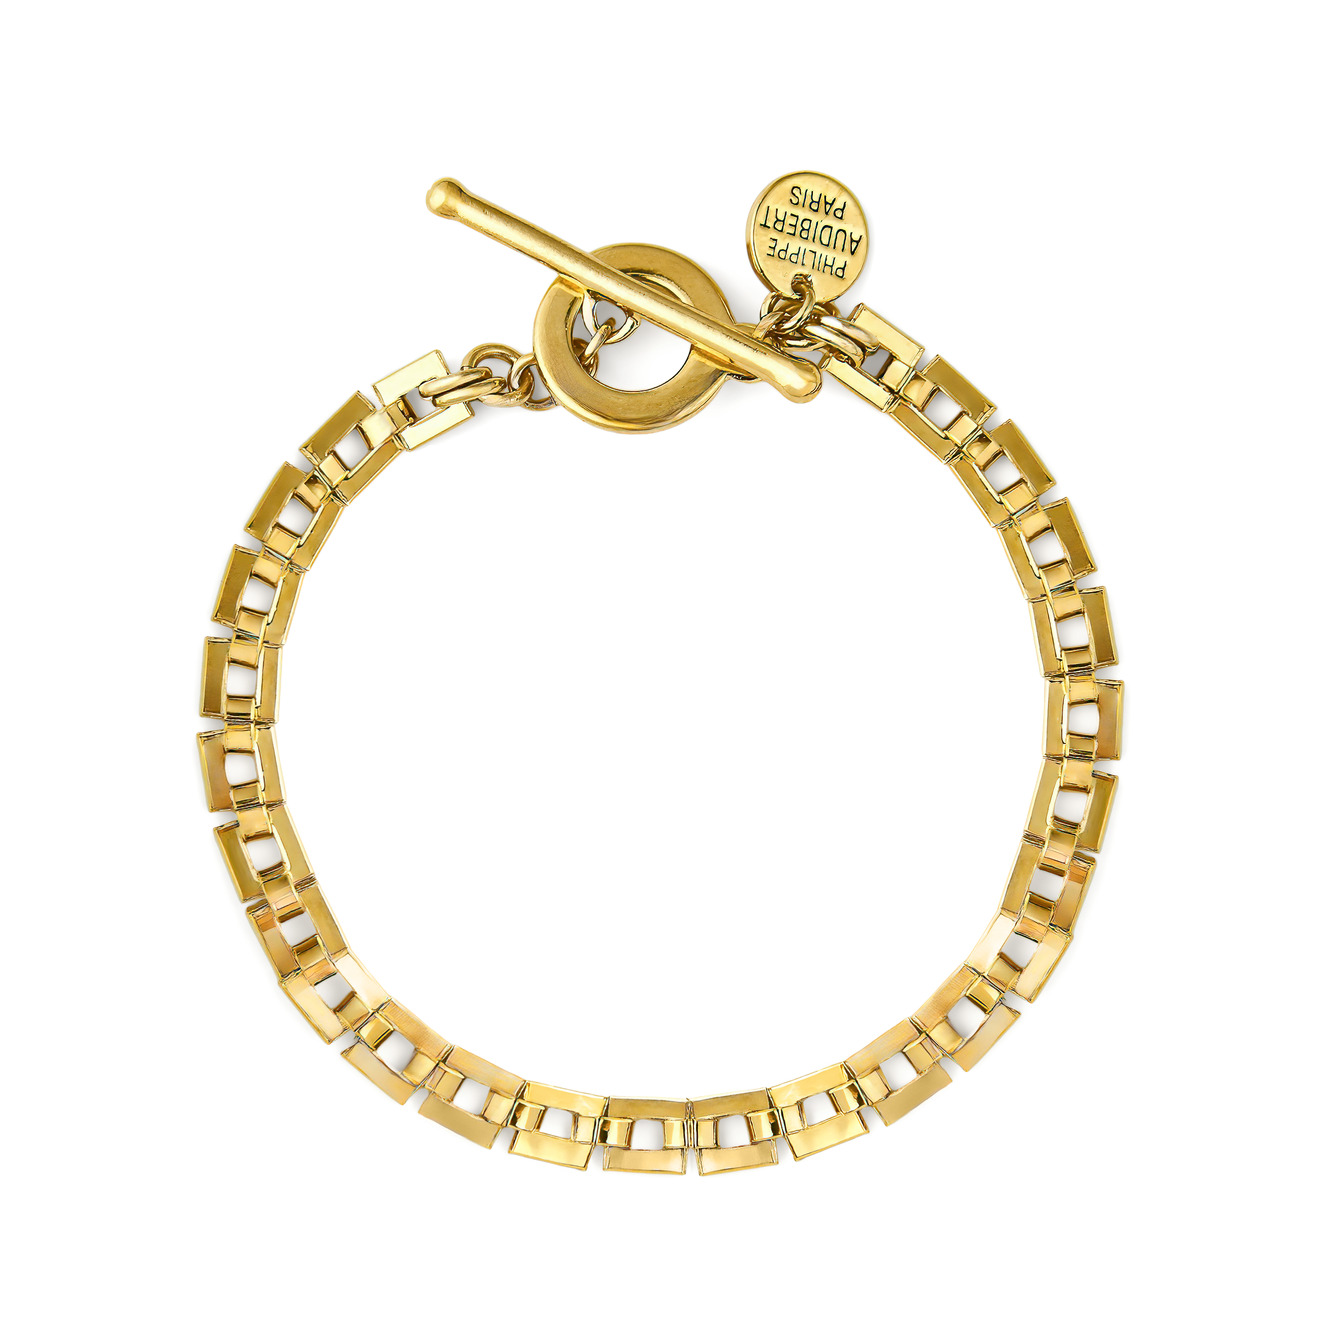 Philippe Audibert Позолоченный браслет-цепь Avner с квадратными звеньями philippe audibert серебристый браслет цепь alyssa